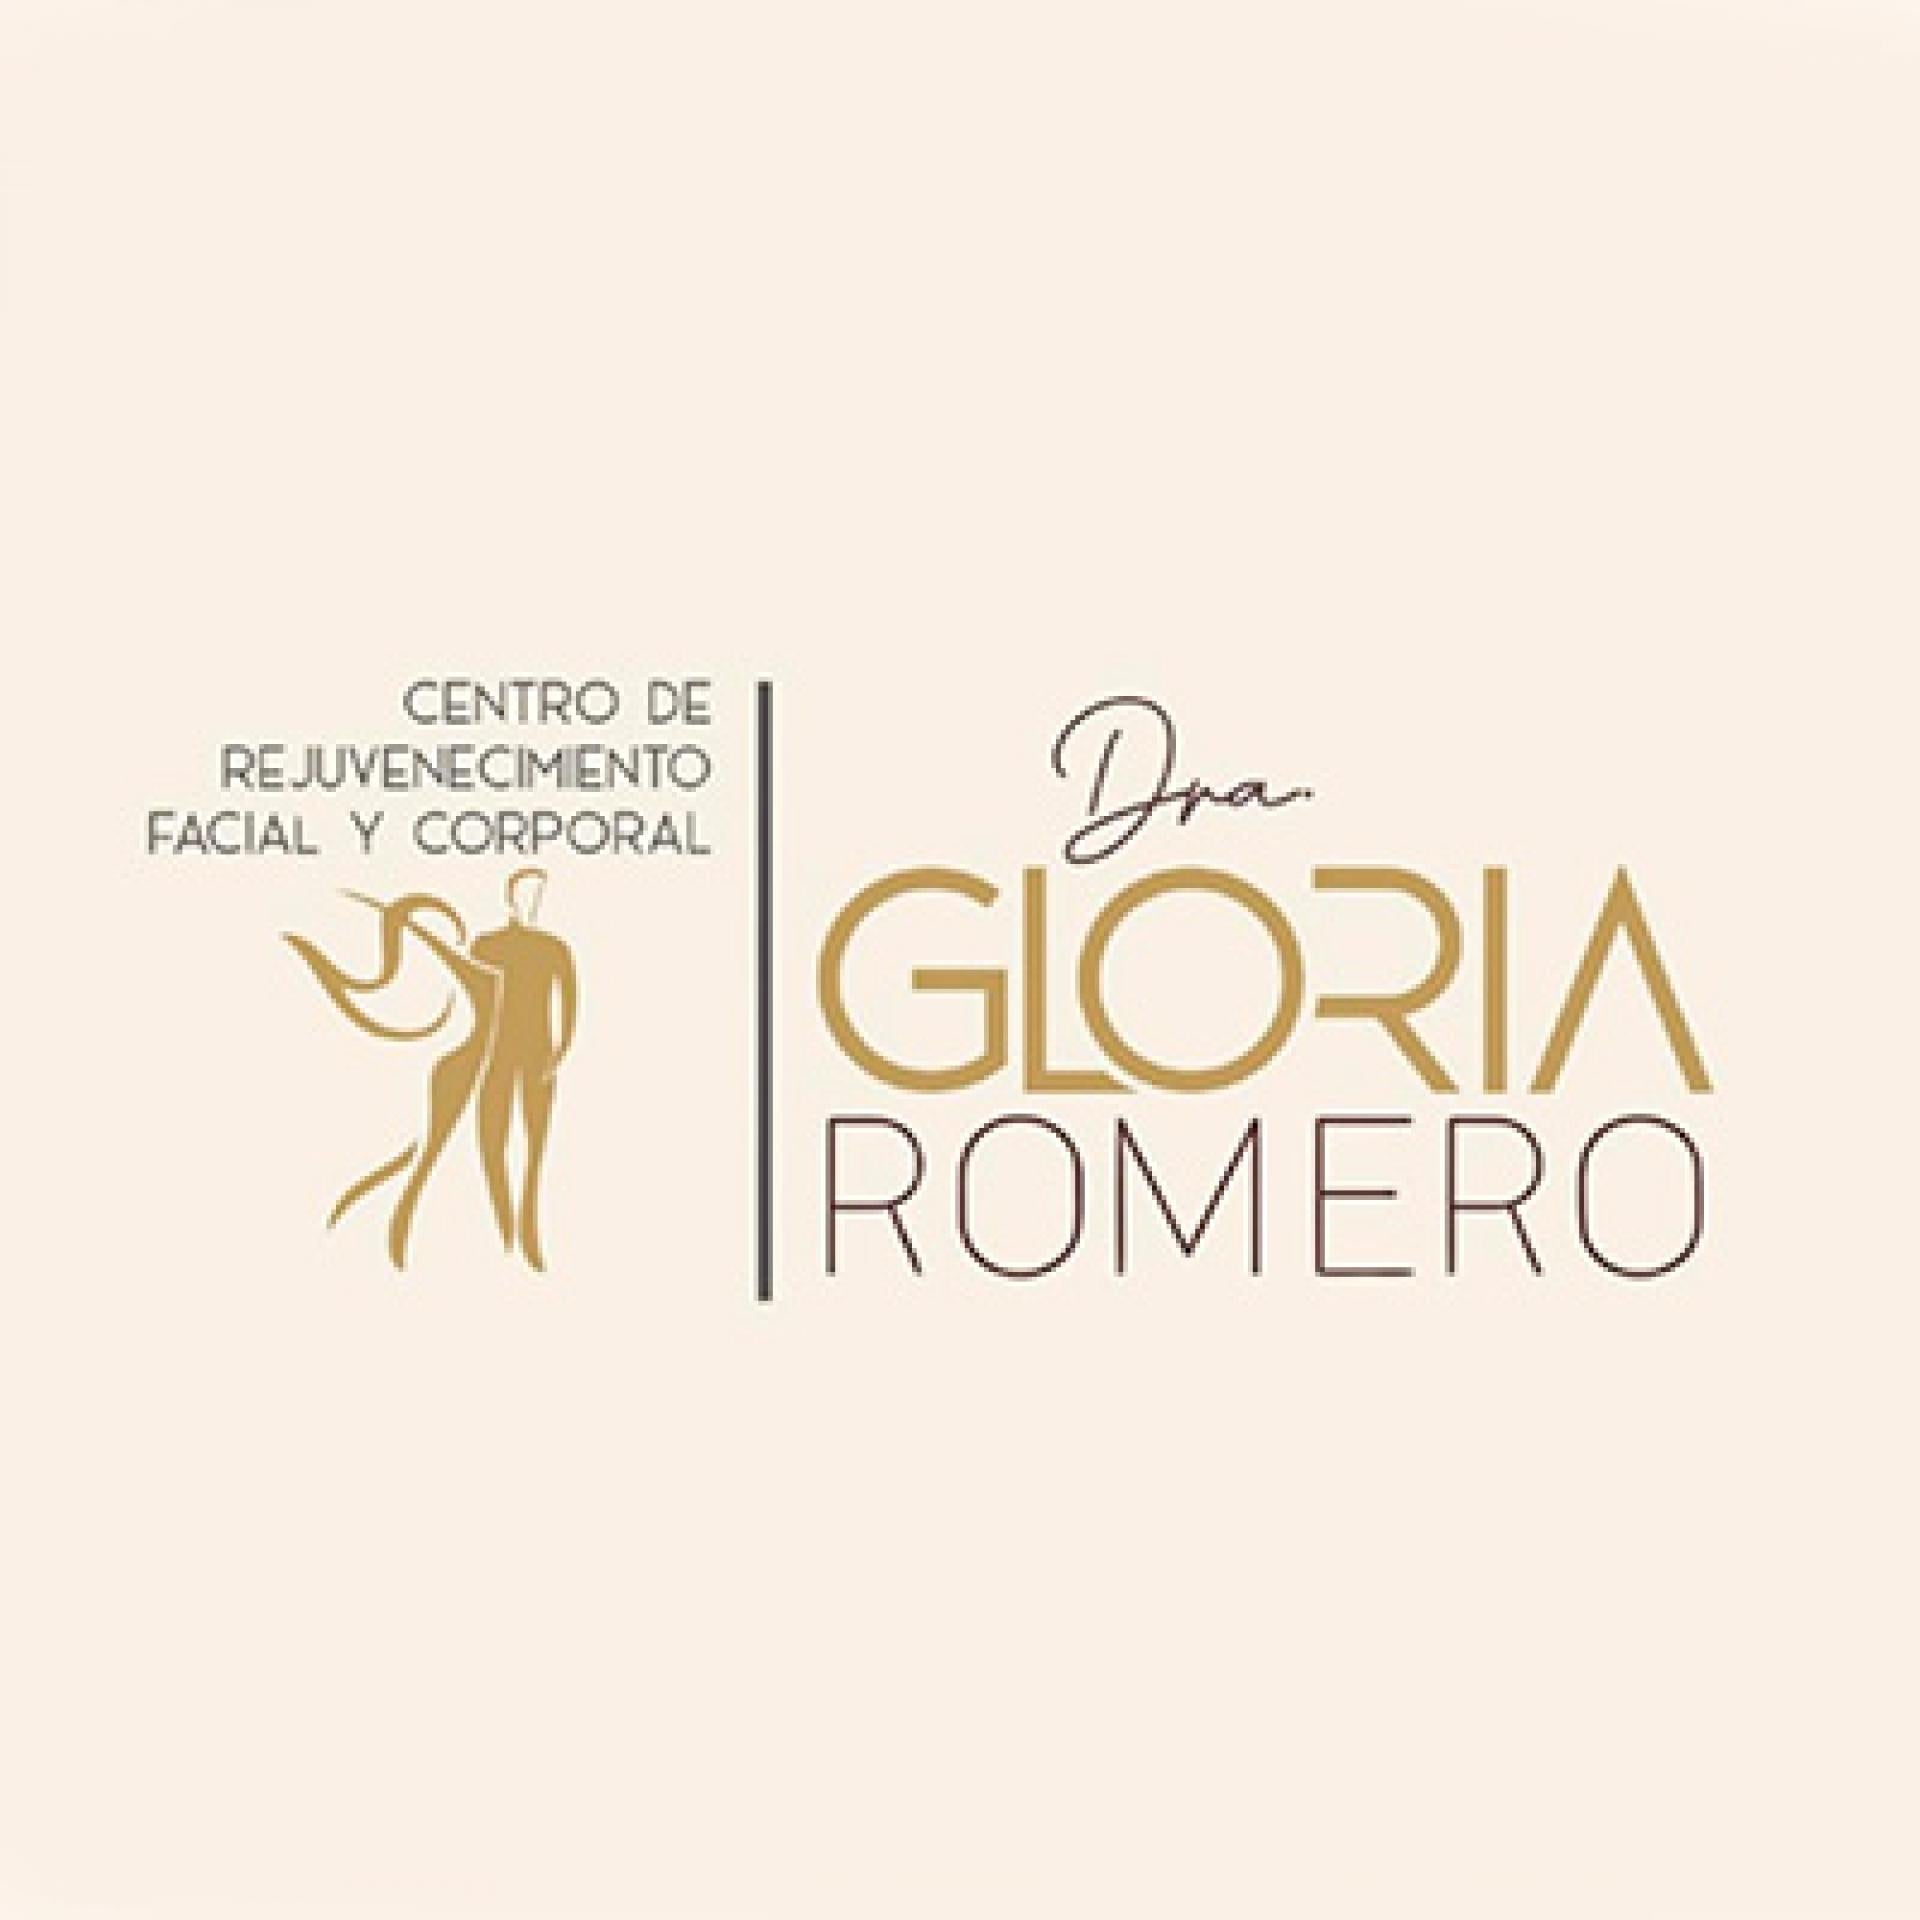 DRA. GLORIA ROMERO